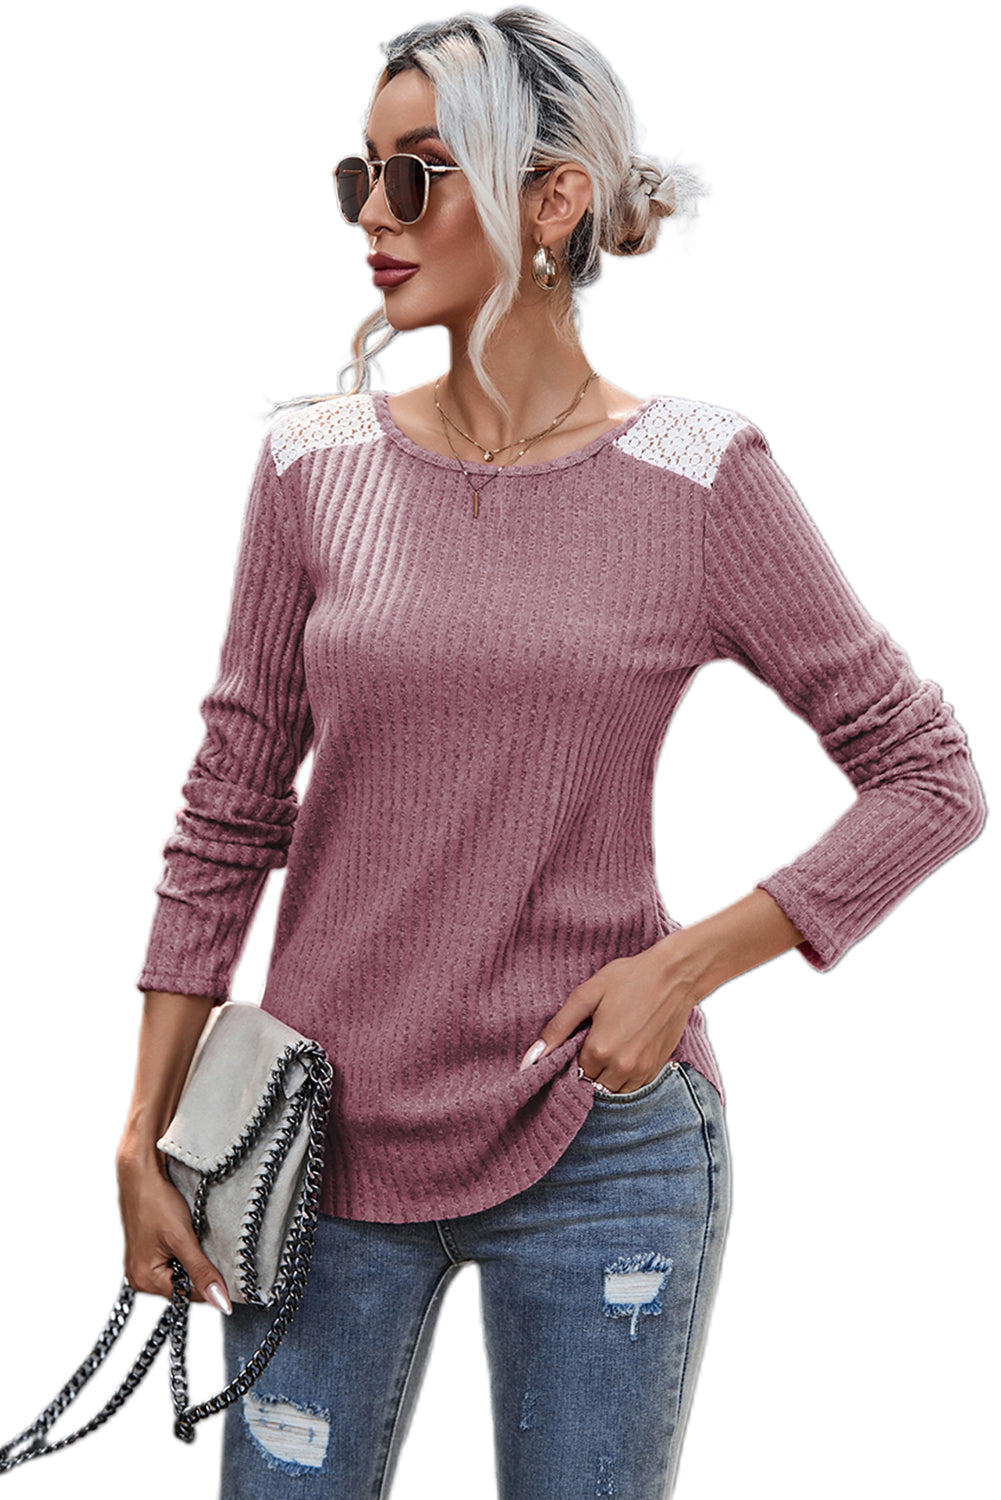 Ružičasti ležerni pulover s rebrastim pletenim čipkama na ramenima